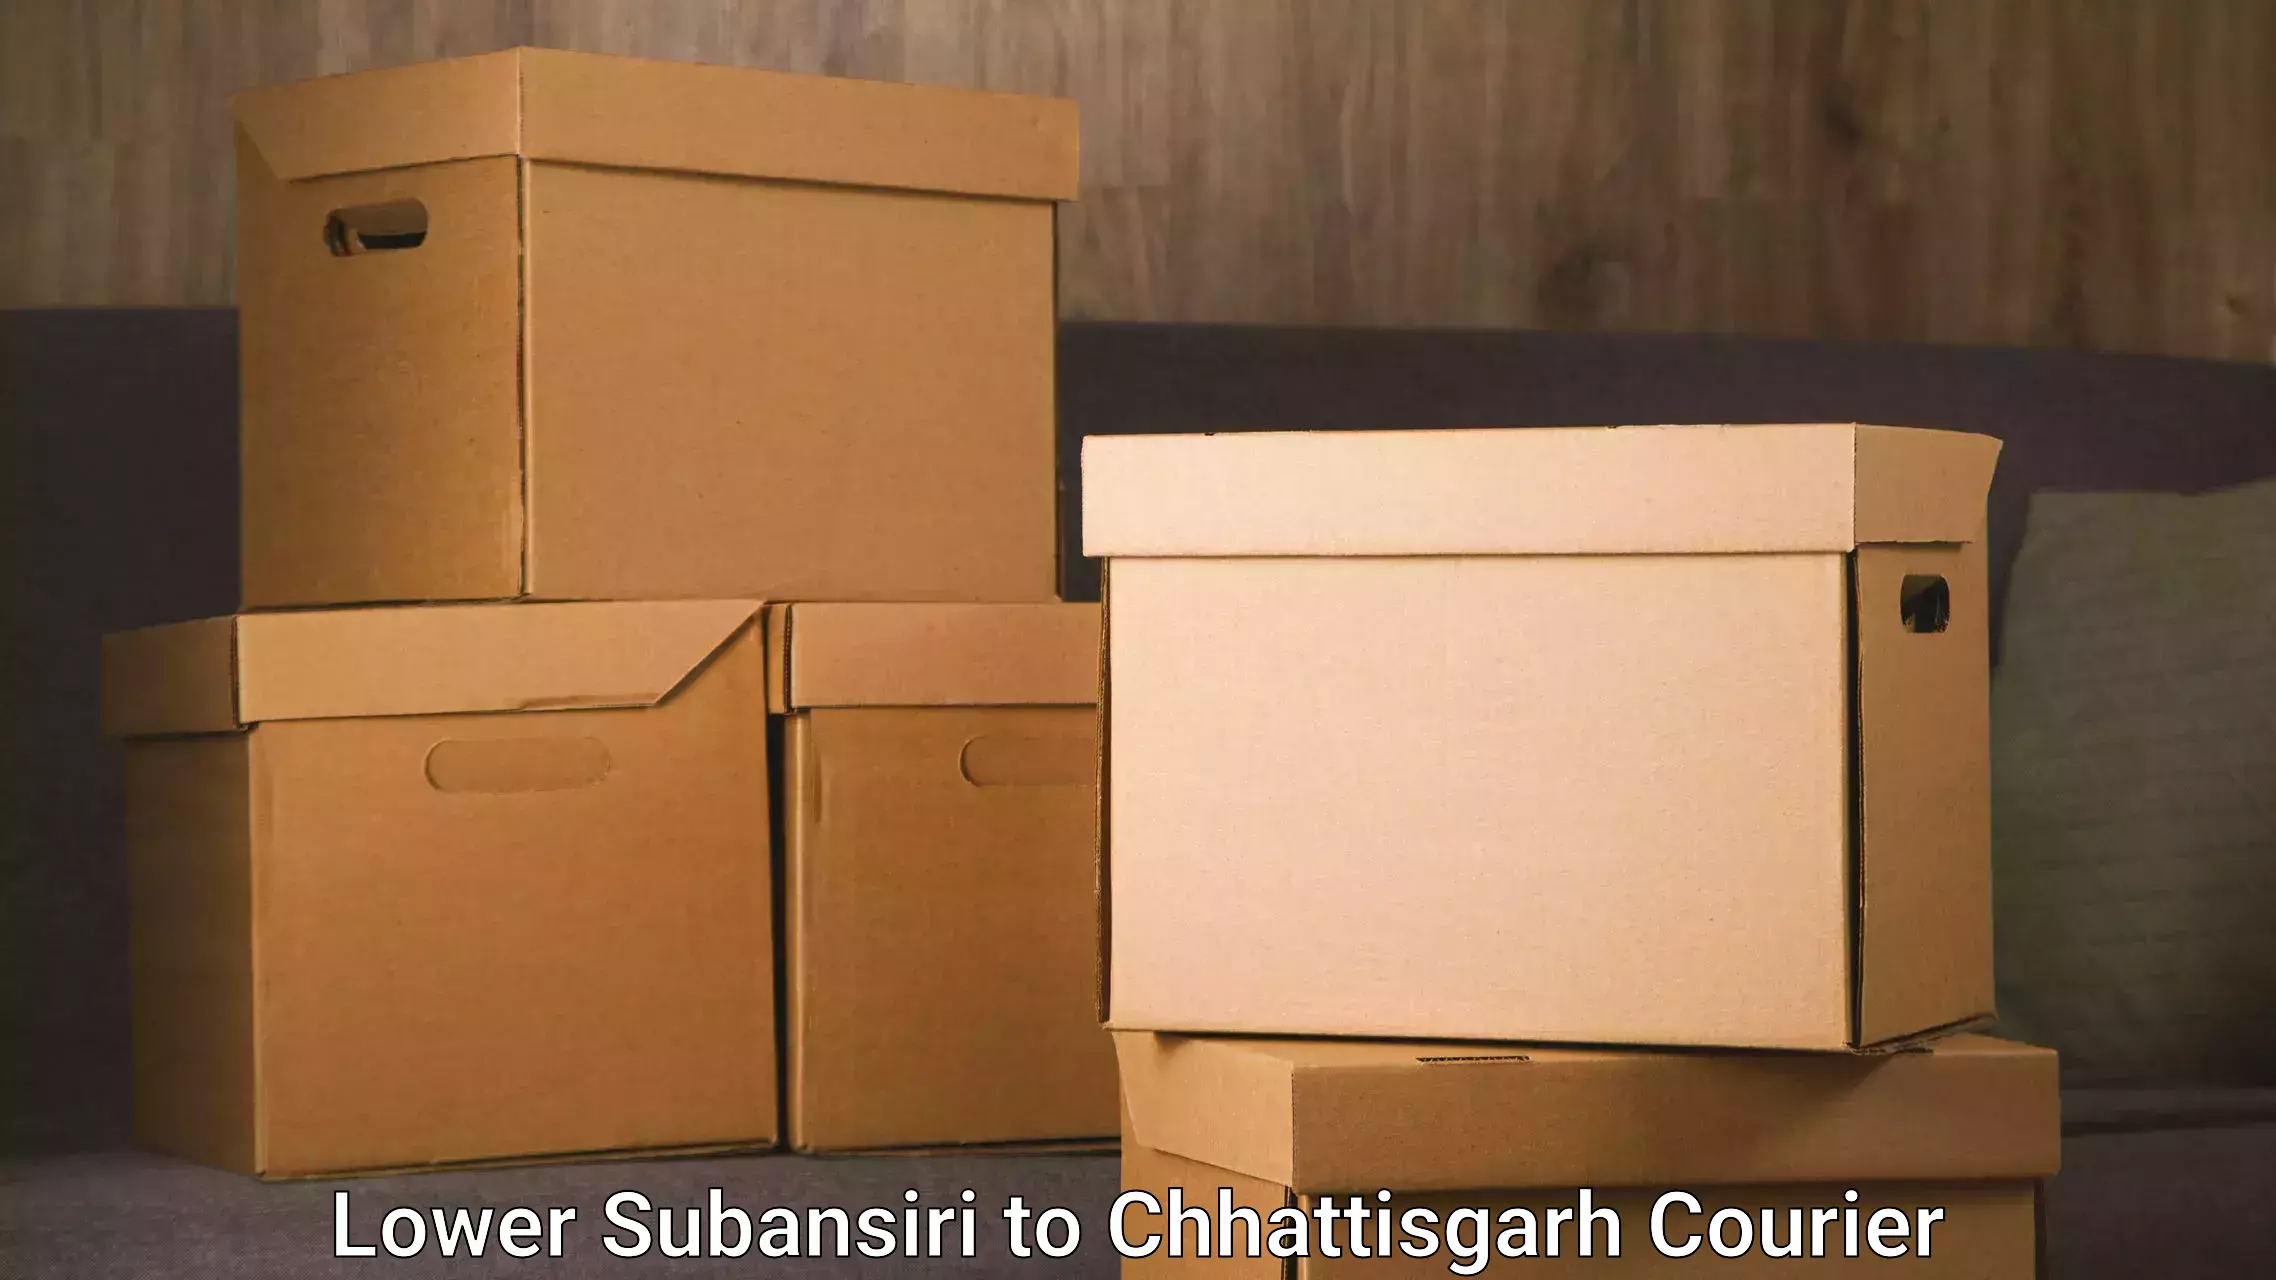 Reliable courier service Lower Subansiri to Jaijaipur